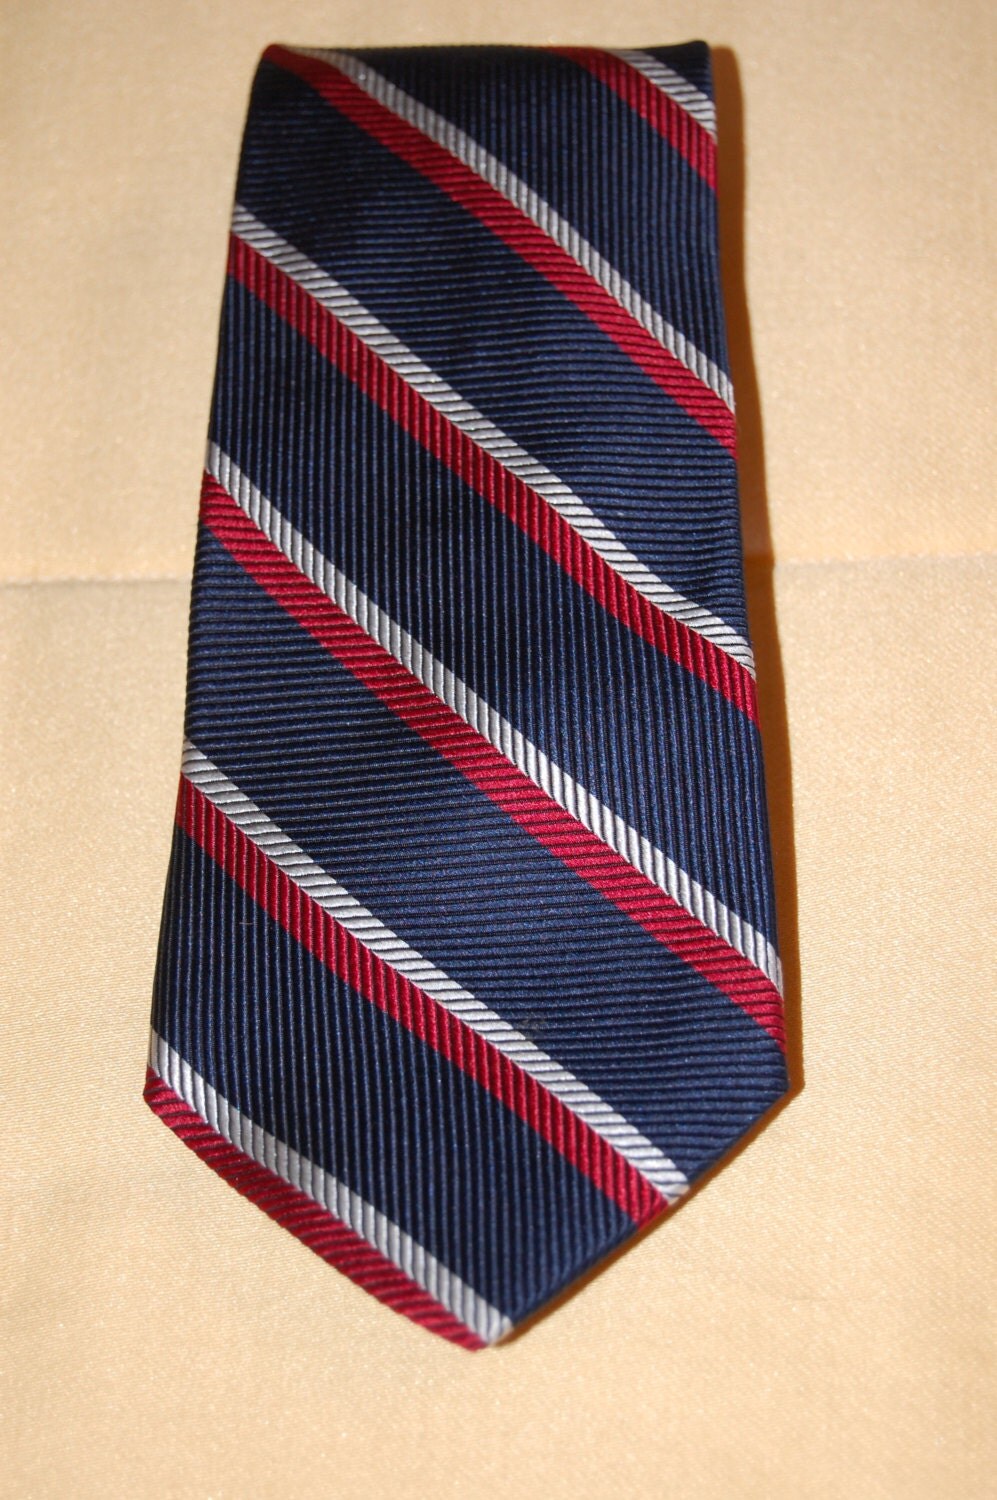 Tommy Hilfiger Skinny Necktie / Red White & Blue Striped